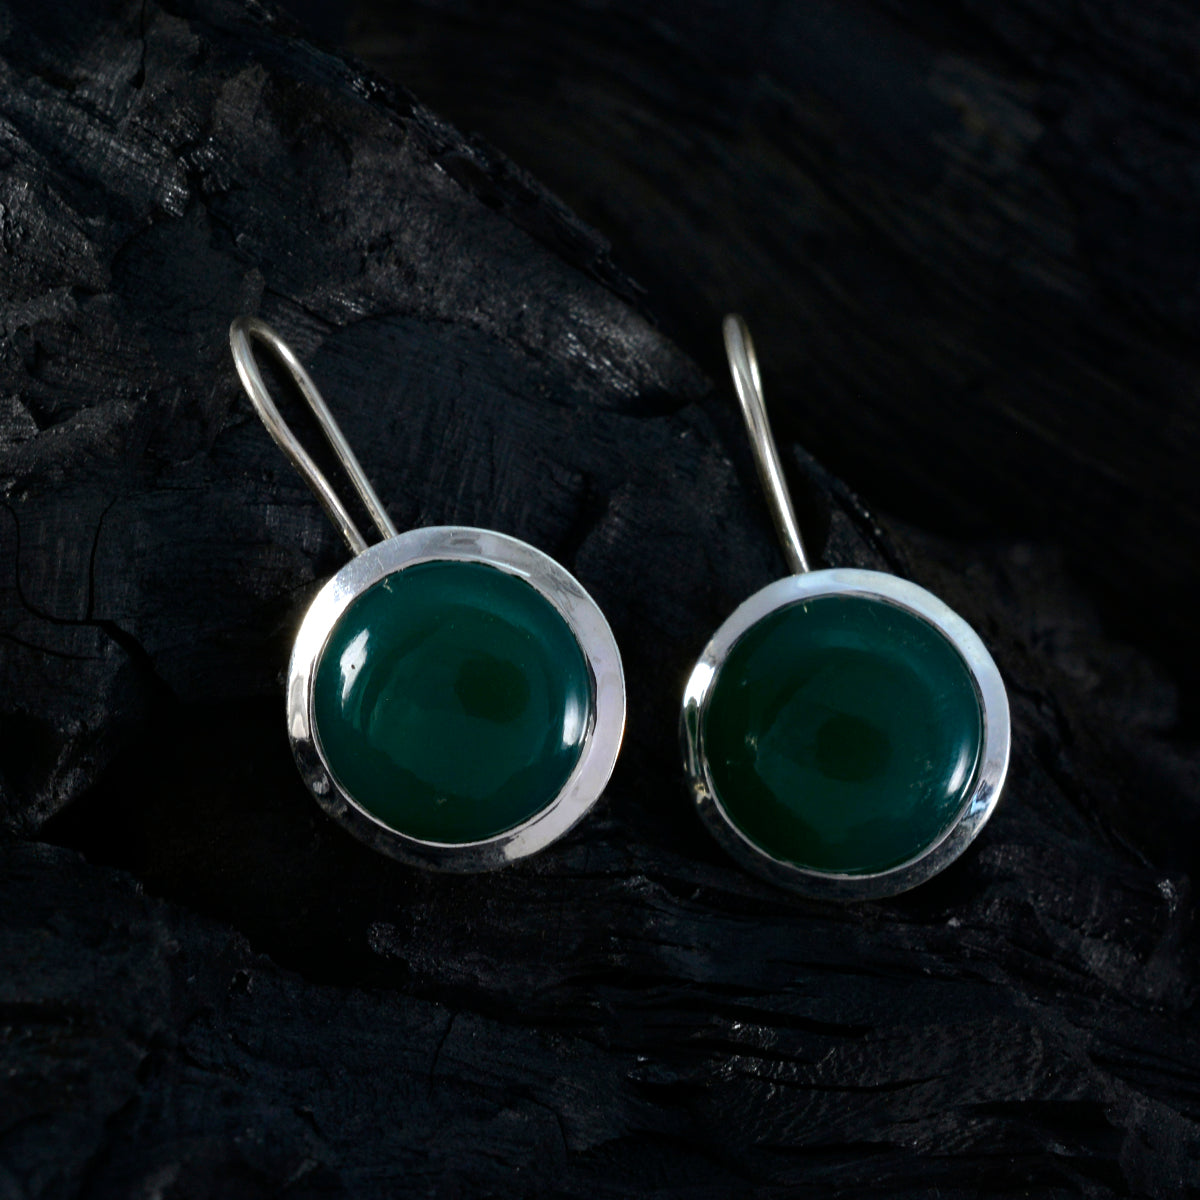 Riyo Prachtige 925 Sterling Zilveren Oorbel Voor Femme Groene Onyx Oorbel Bezel Instelling Groene Oorbel Dangle Earring